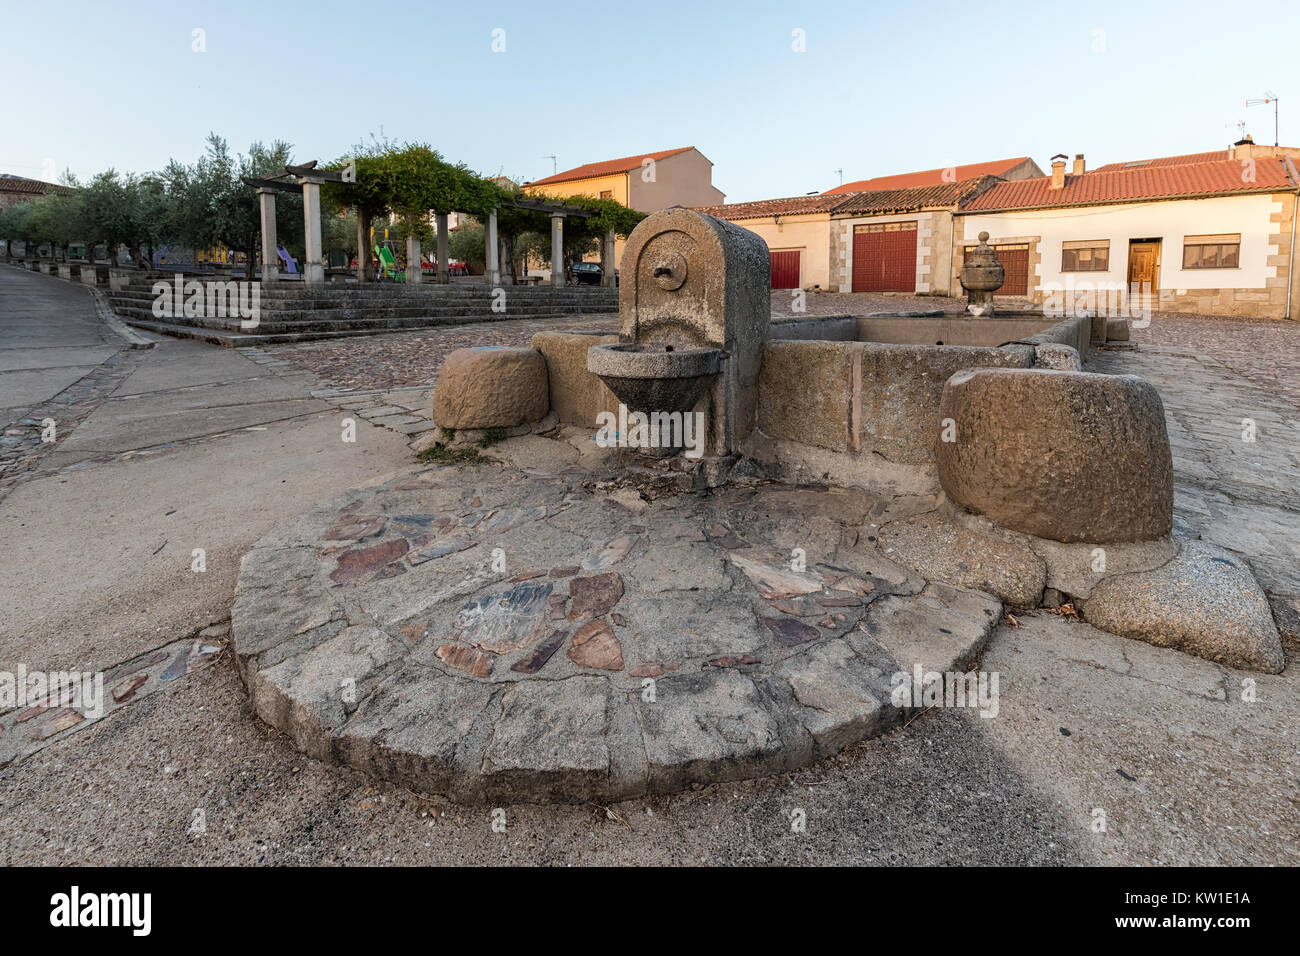 Old fountain with watering trough in San Felices de los Gallegos. Spain. Stock Photo